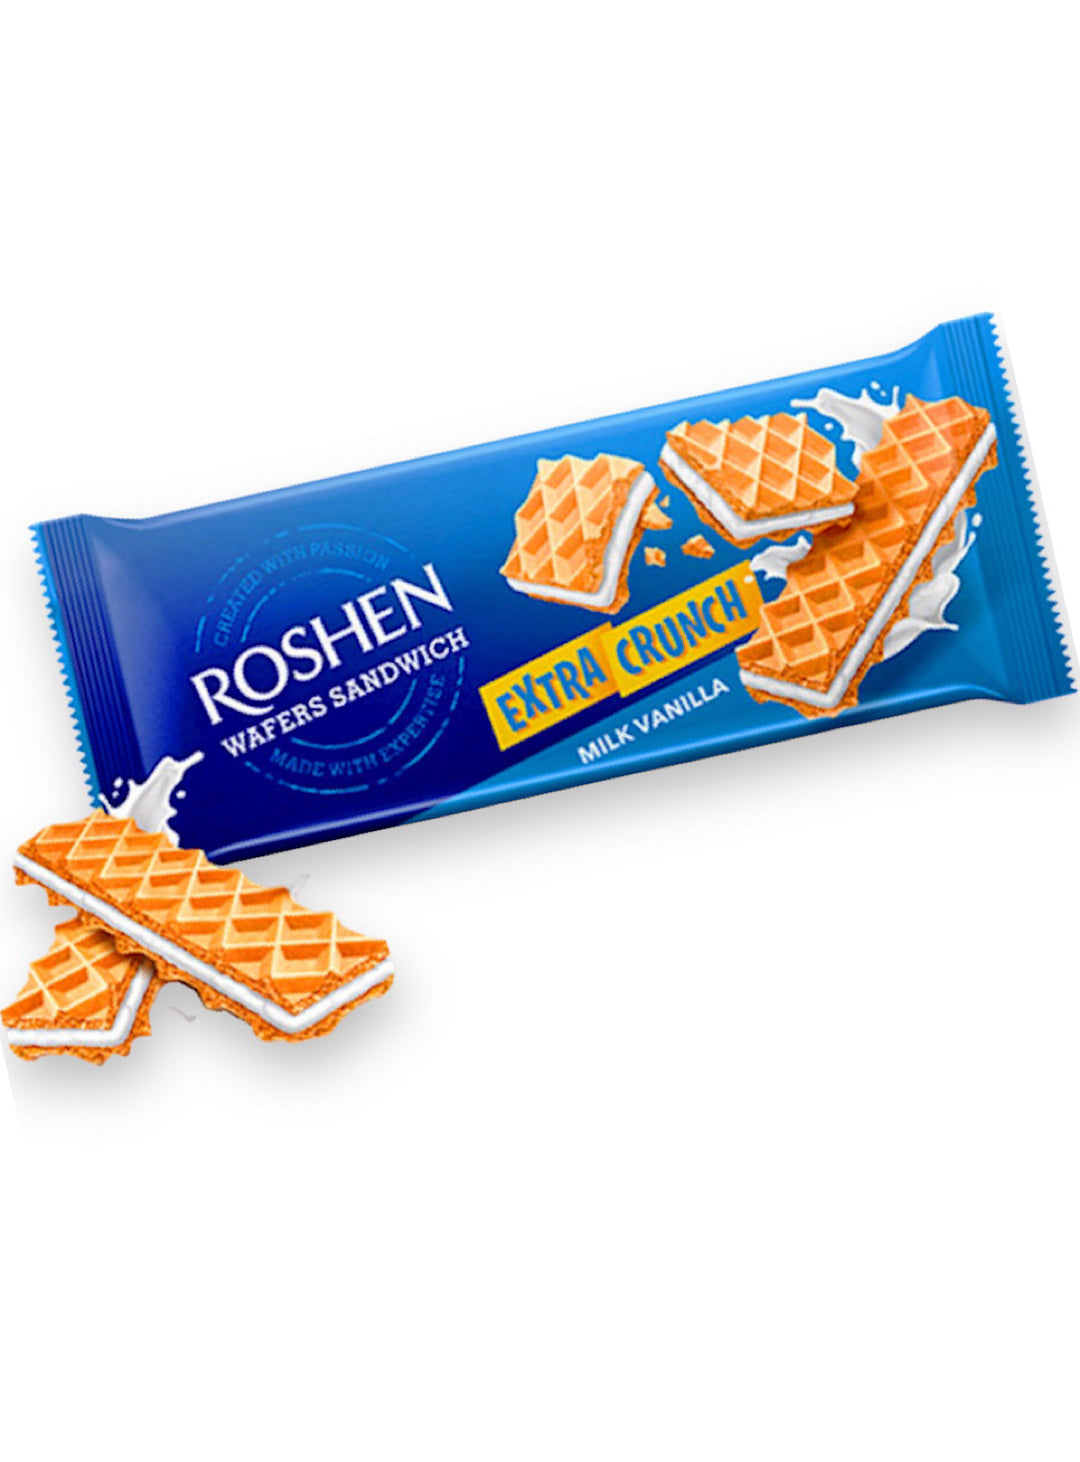 Milk Vanilla Crunch Wafers - Roshen - 142g